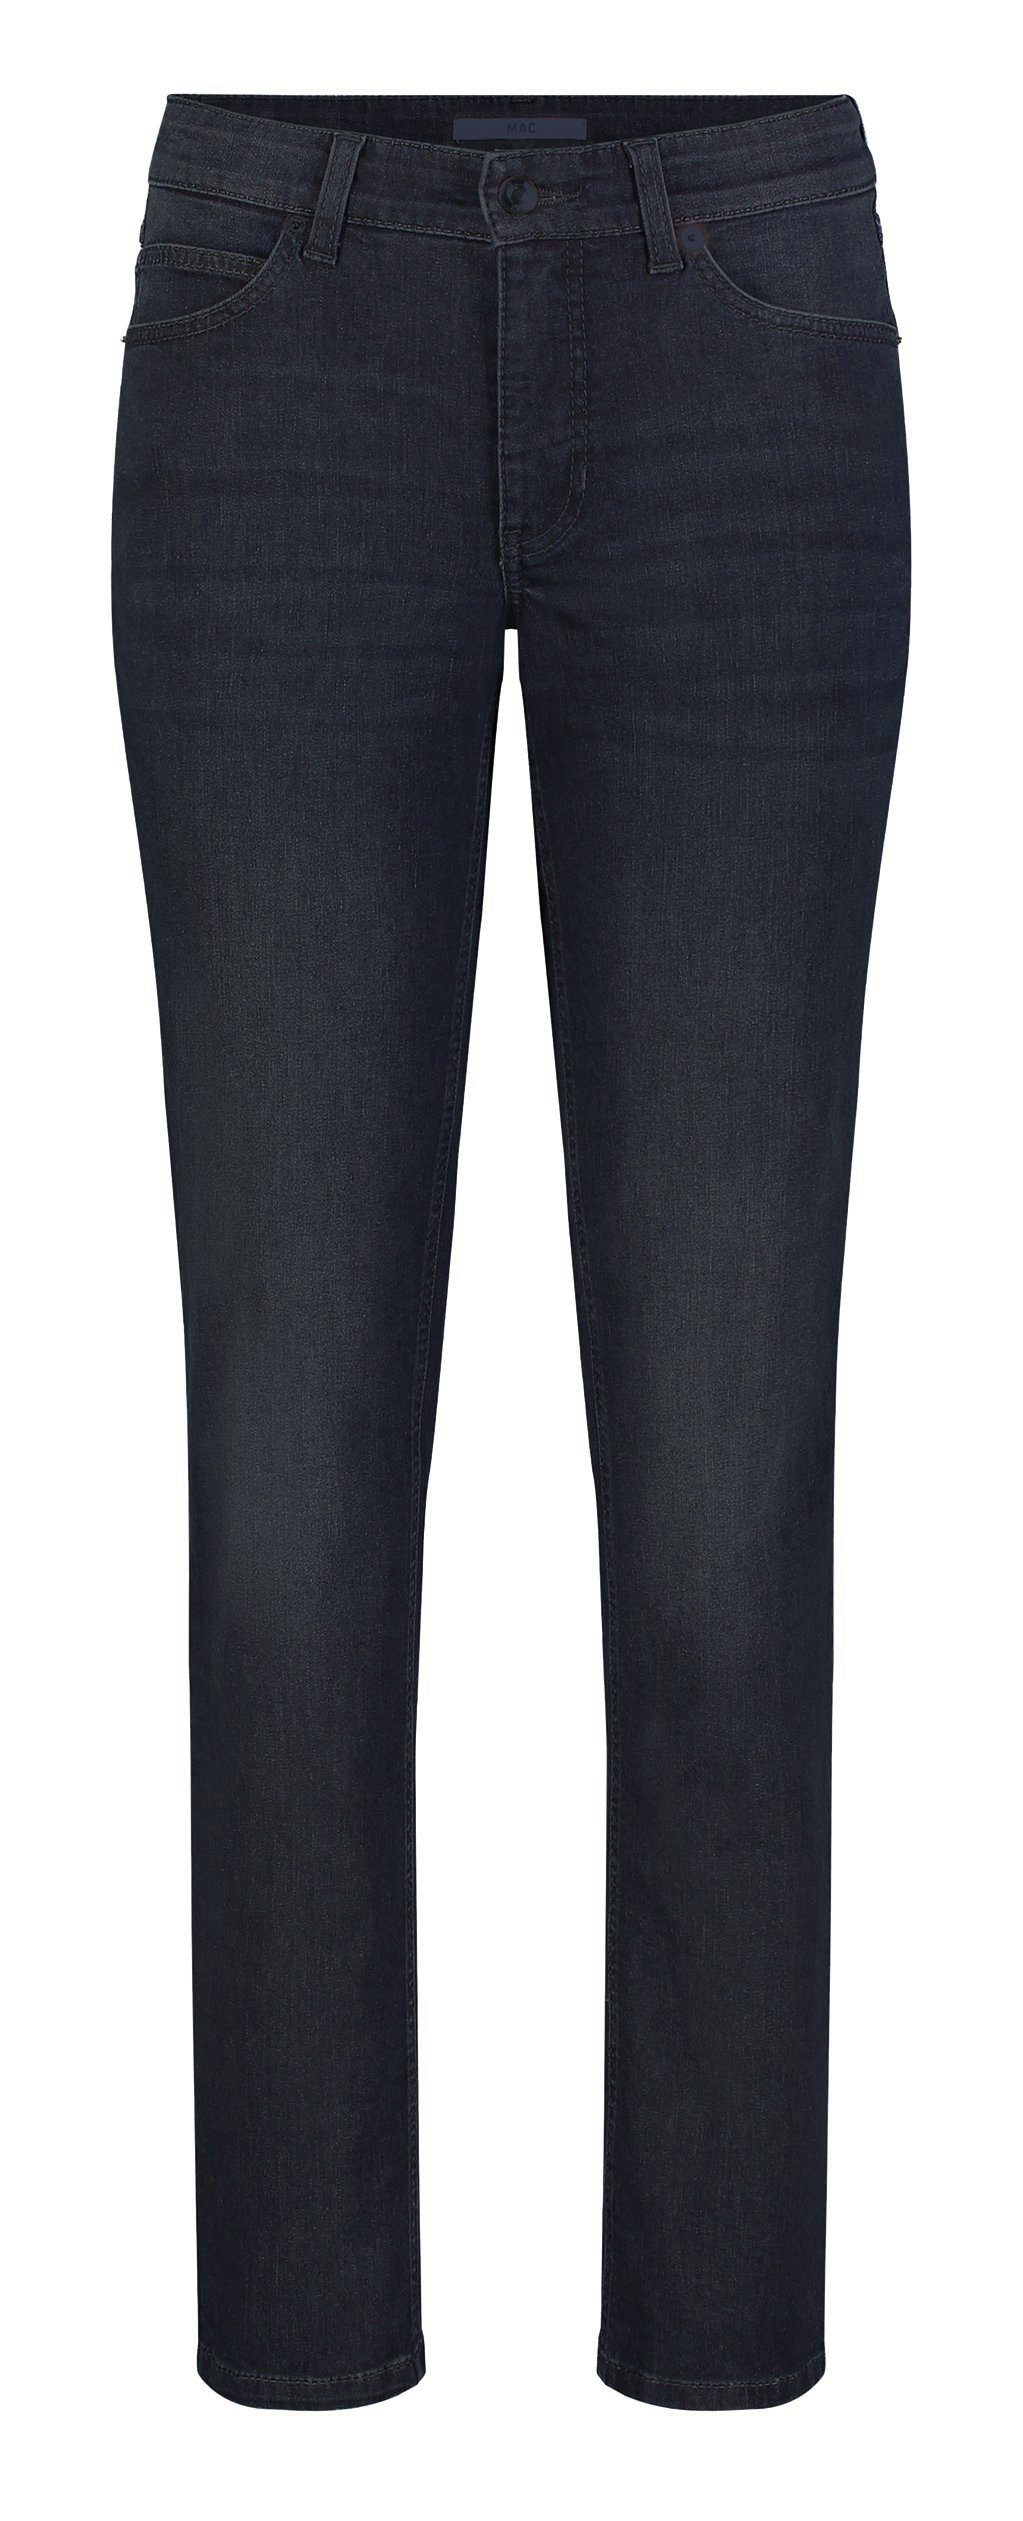 Damen Jeans MAC Stretch-Jeans MAC MELANIE dark wash blue black 5040-97-0380L